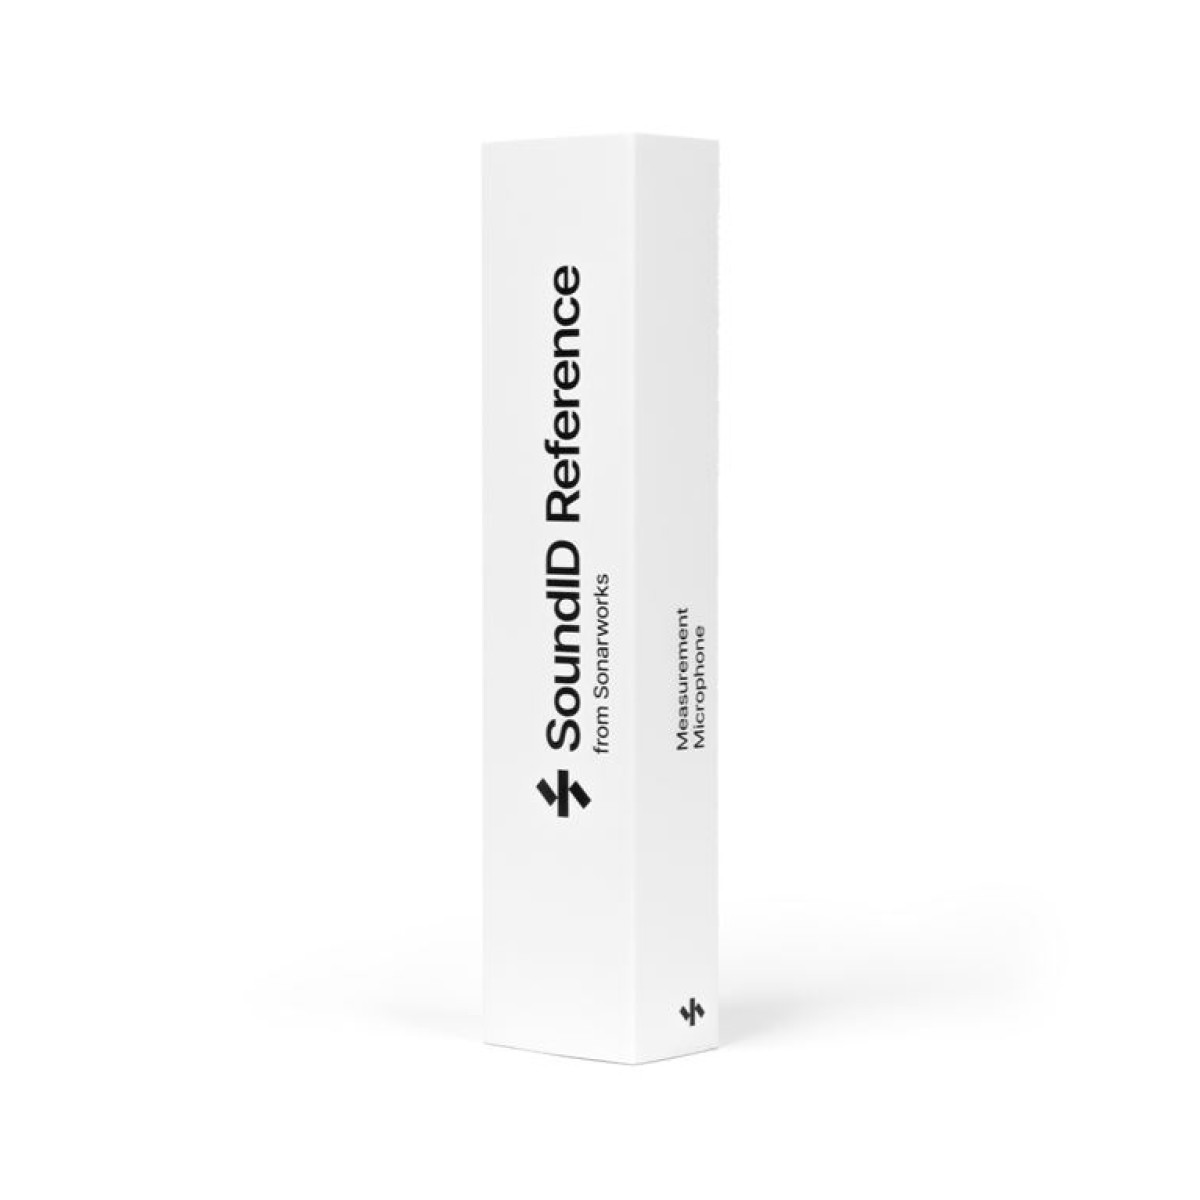 SONARWORKS XREF-20-R5 Sound-ID Reference Μικρόφωνο Μετρήσεων